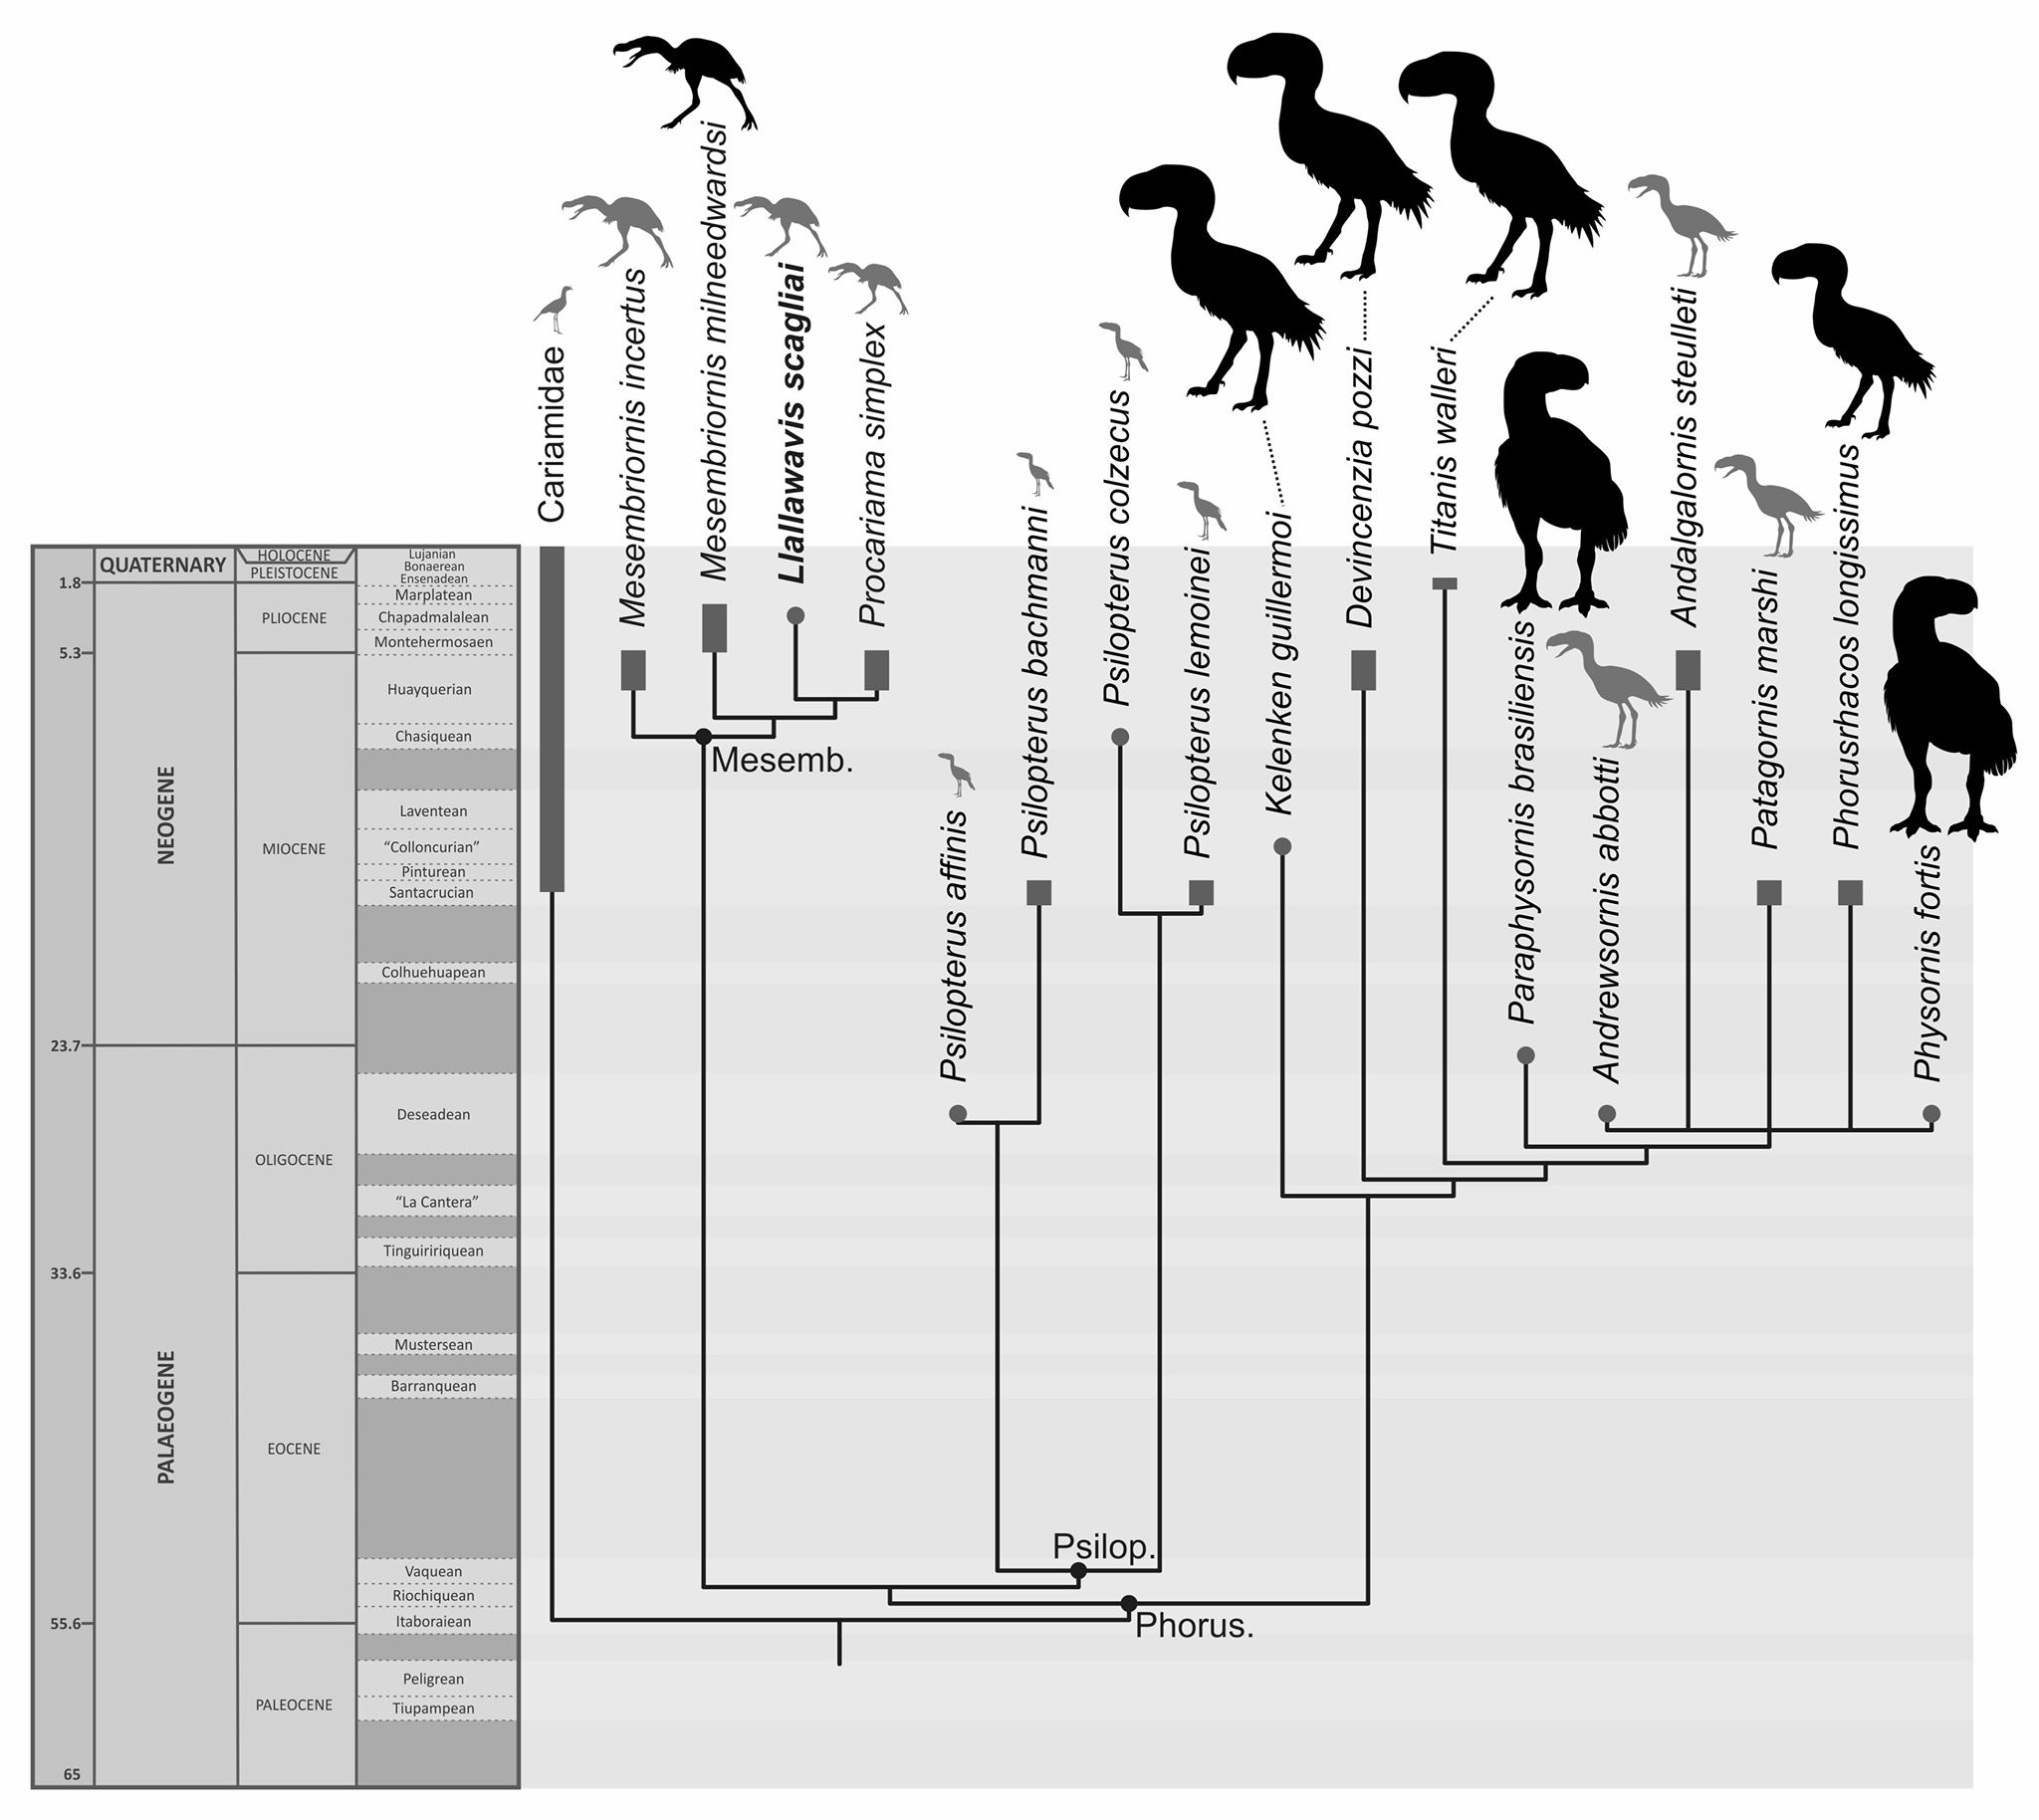 Мое перерождение в древо эволюции 181. Эволюция птиц. Эволюция динозавров в птиц. Происхождение птиц схема. Ветвь эволюции птиц.